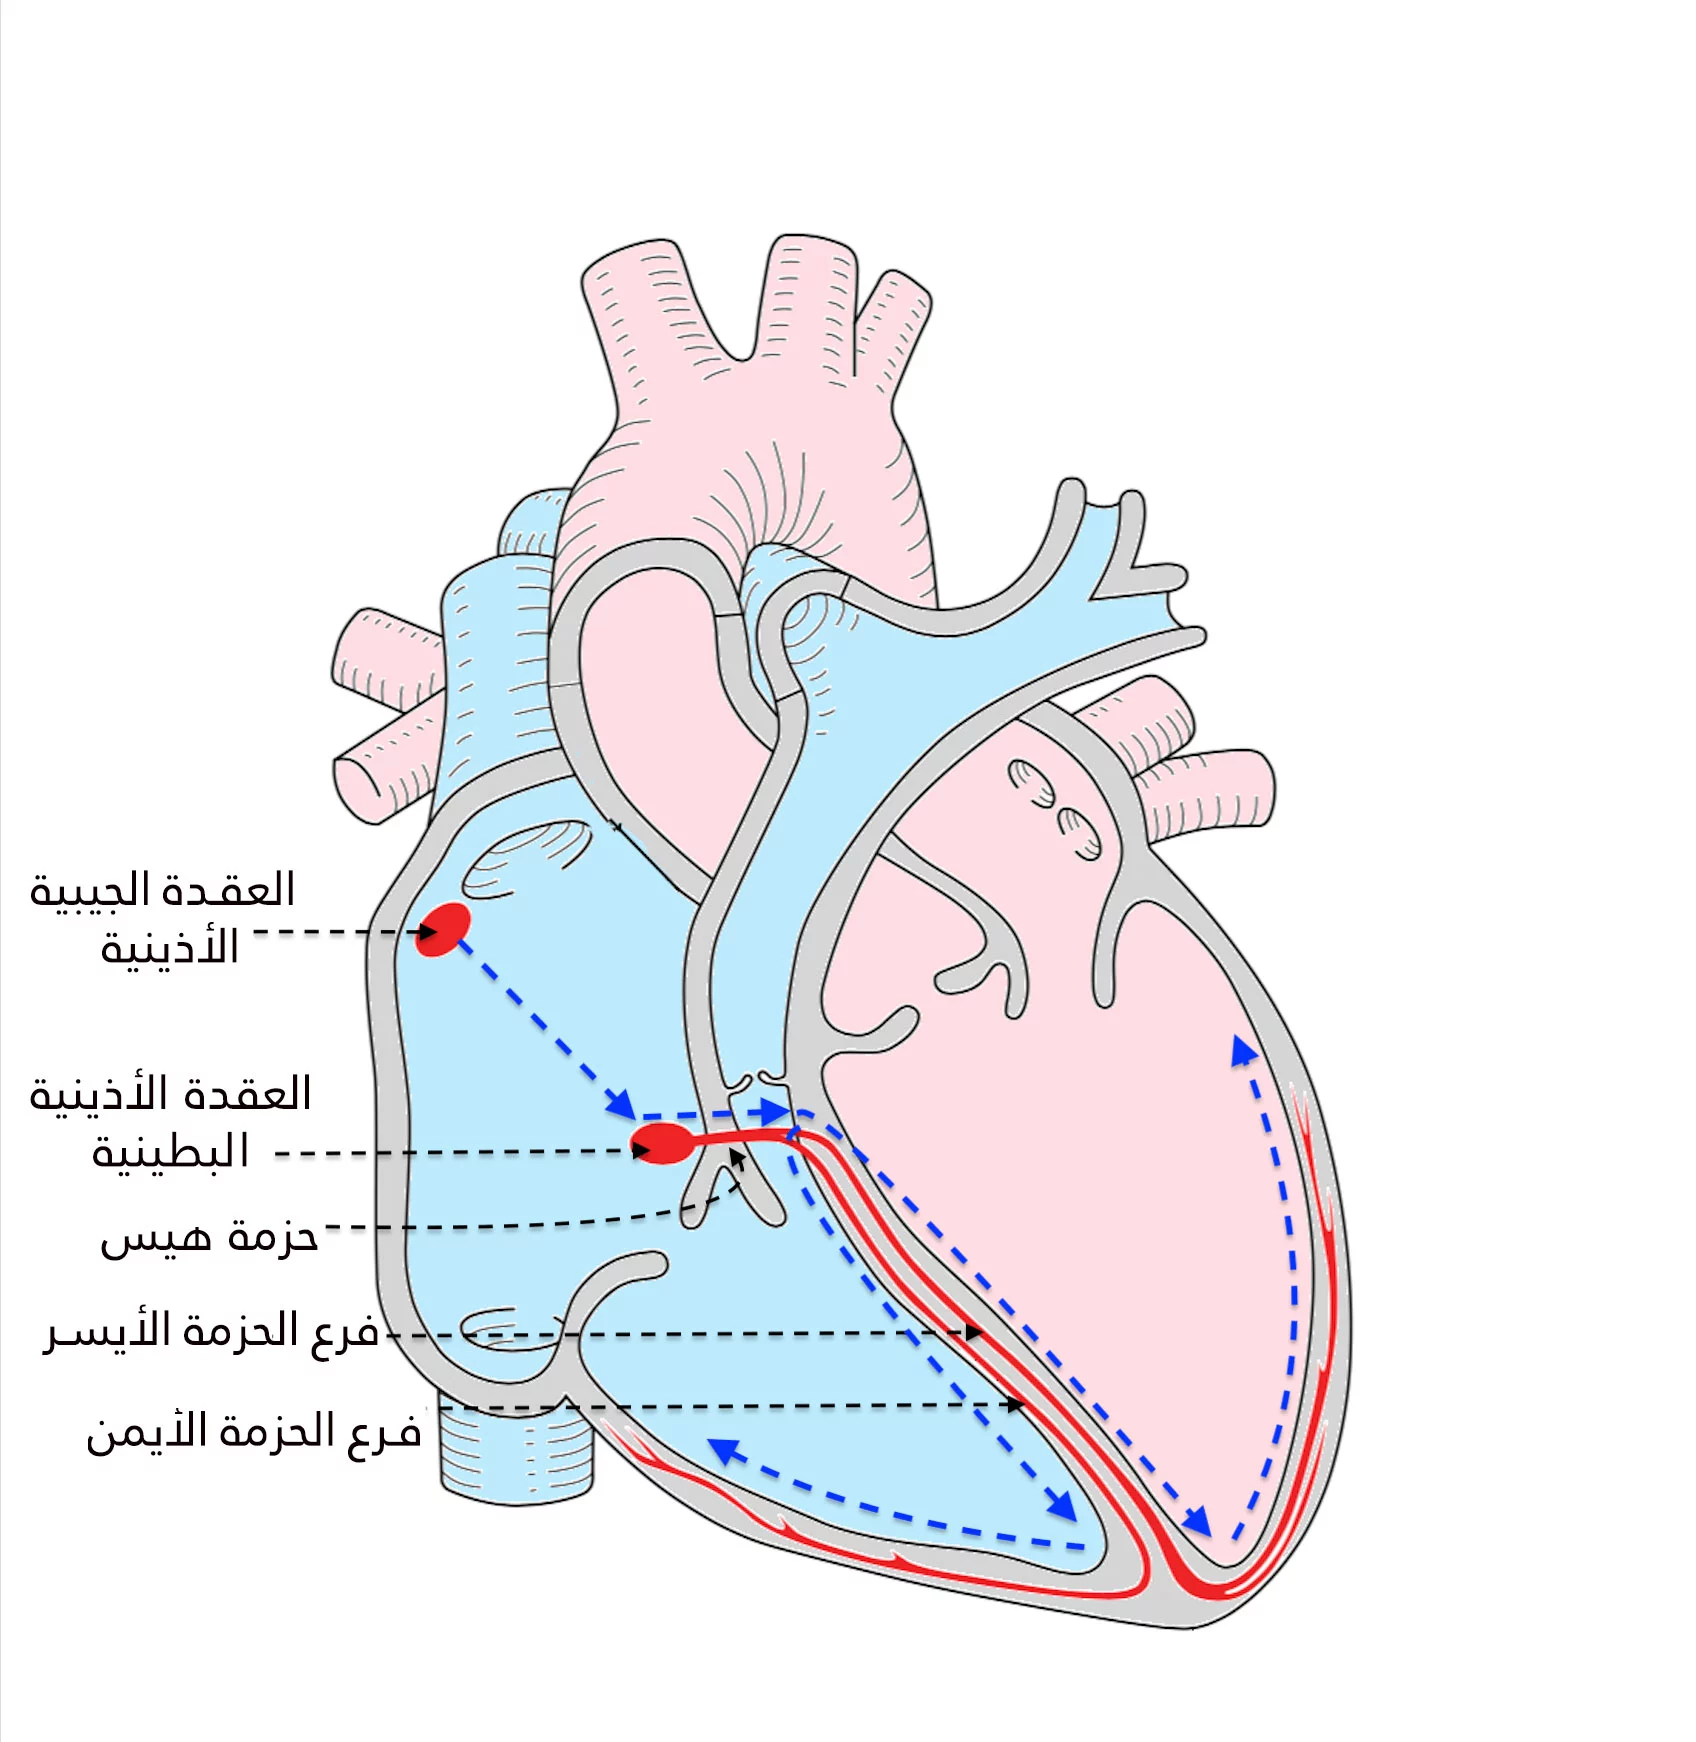 تقوم العقدة الجيبية الأذينية بتوليد النبضات الكهربائية التي تنتقل إلى العقدة الأذينية البطينية ومنها إلى كافة أنحاء القلب عبر حزم خاصة